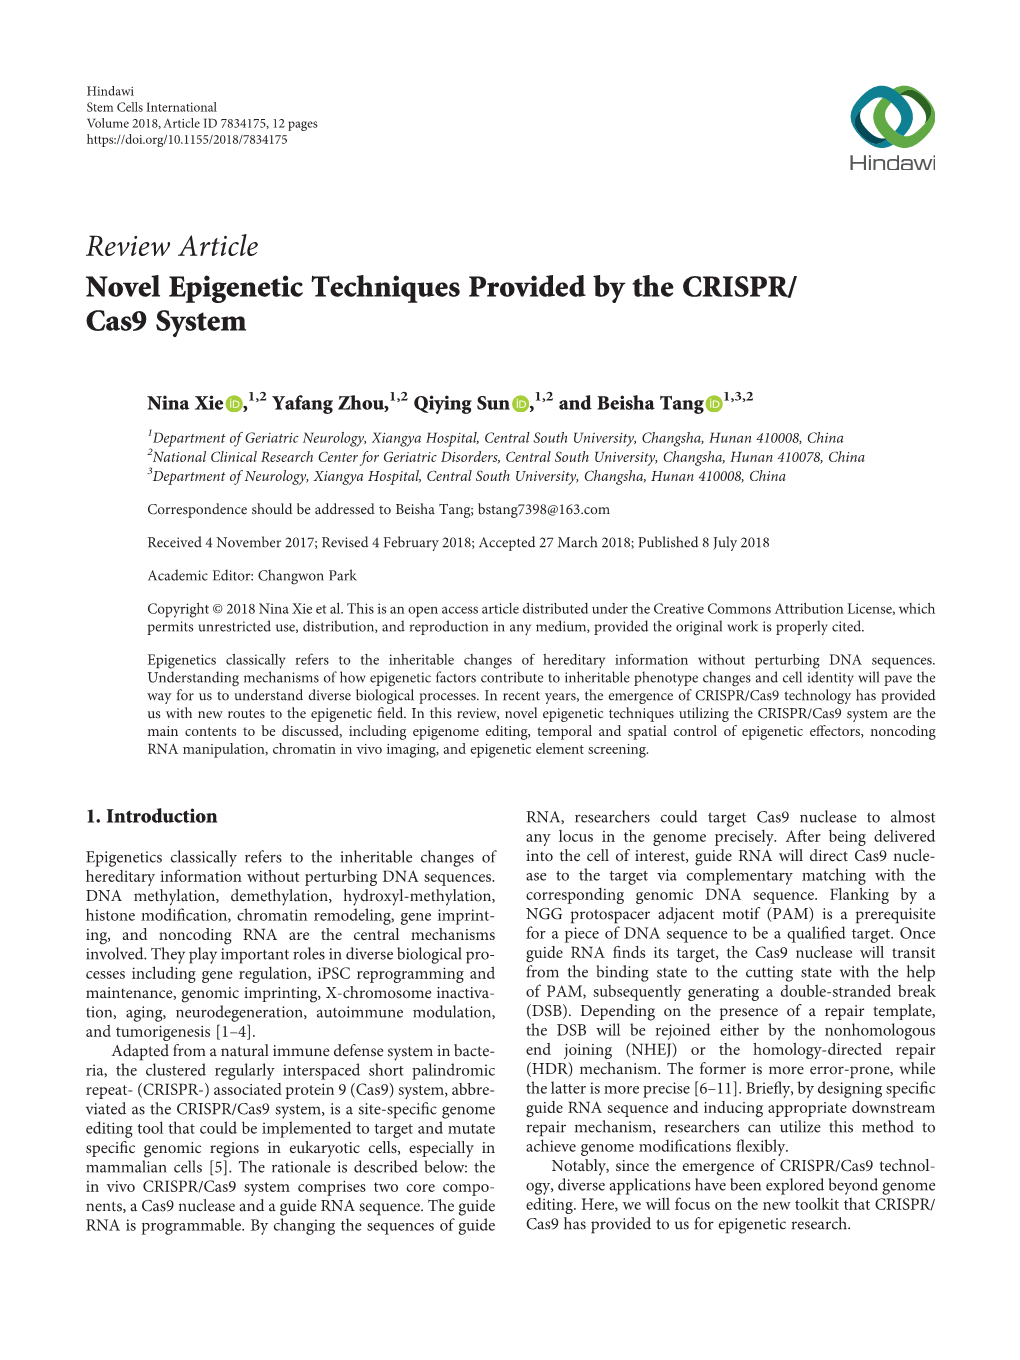 Novel Epigenetic Techniques Provided by the CRISPR/Cas9